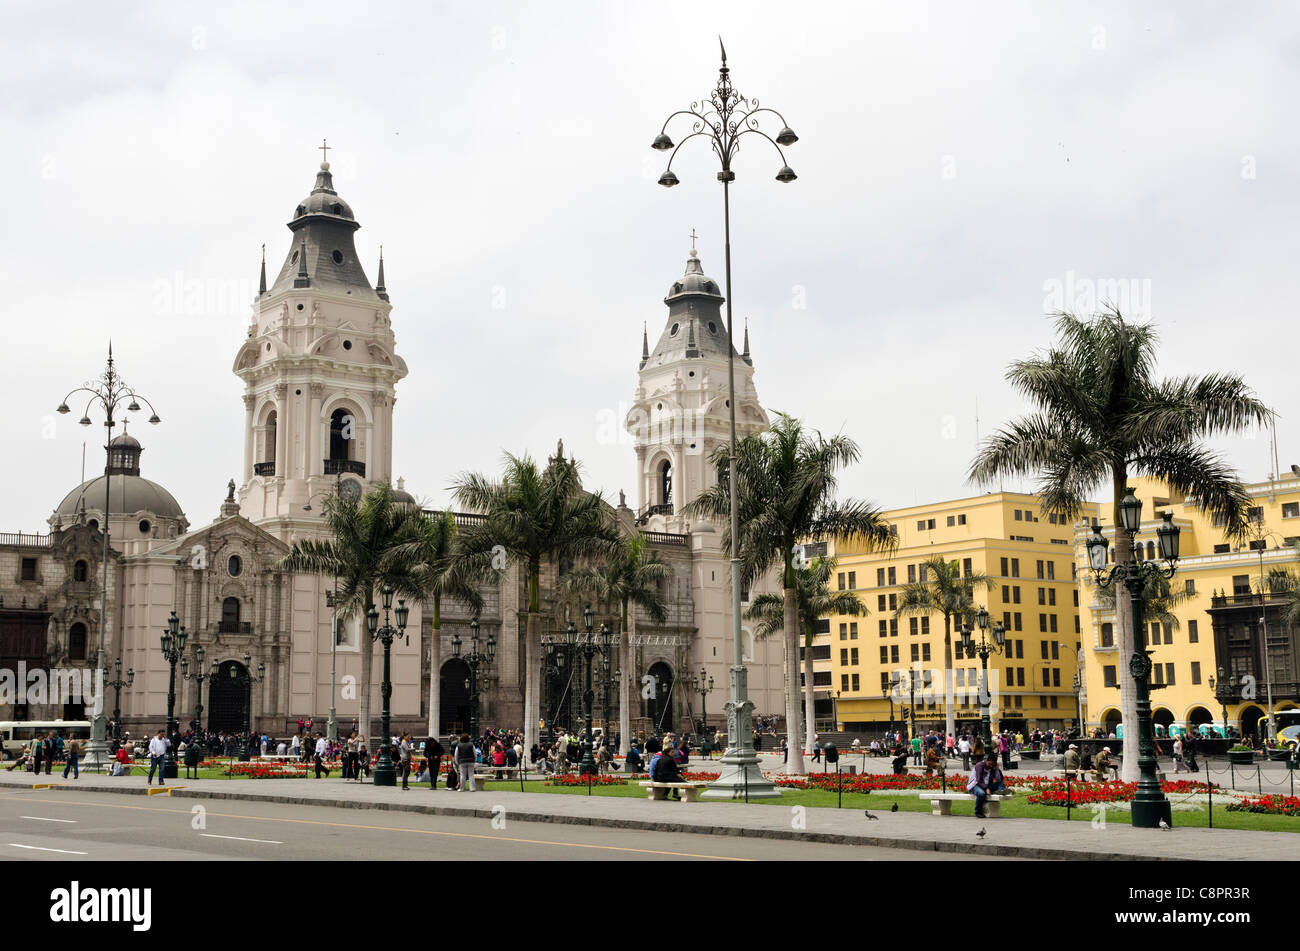 Plaza de Armas city centre Lima Peru Stock Photo